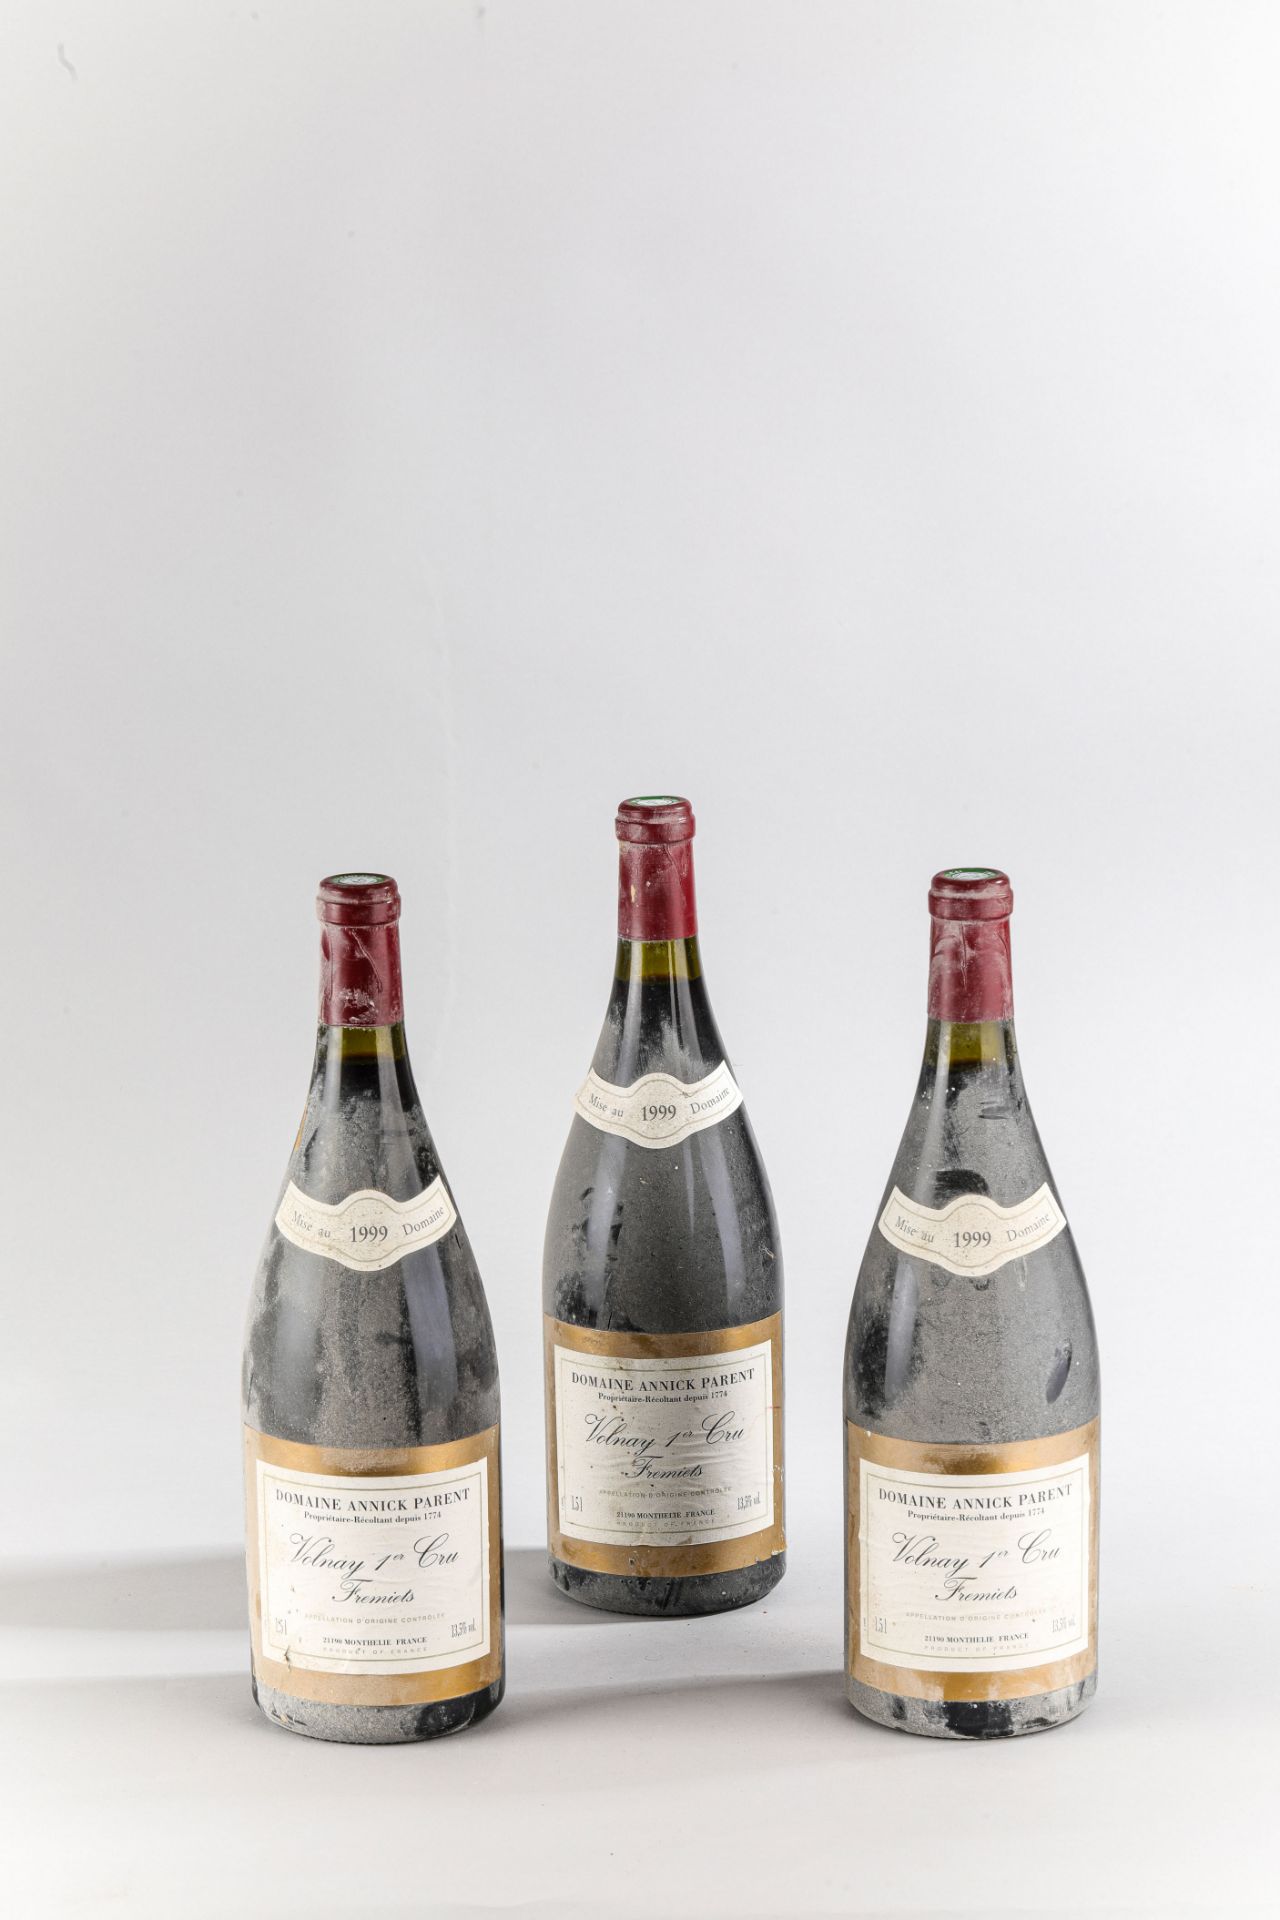 Volnay 1er cru. 1999. 3 bouteilles. Fremiets. Domaine Annick Parent.